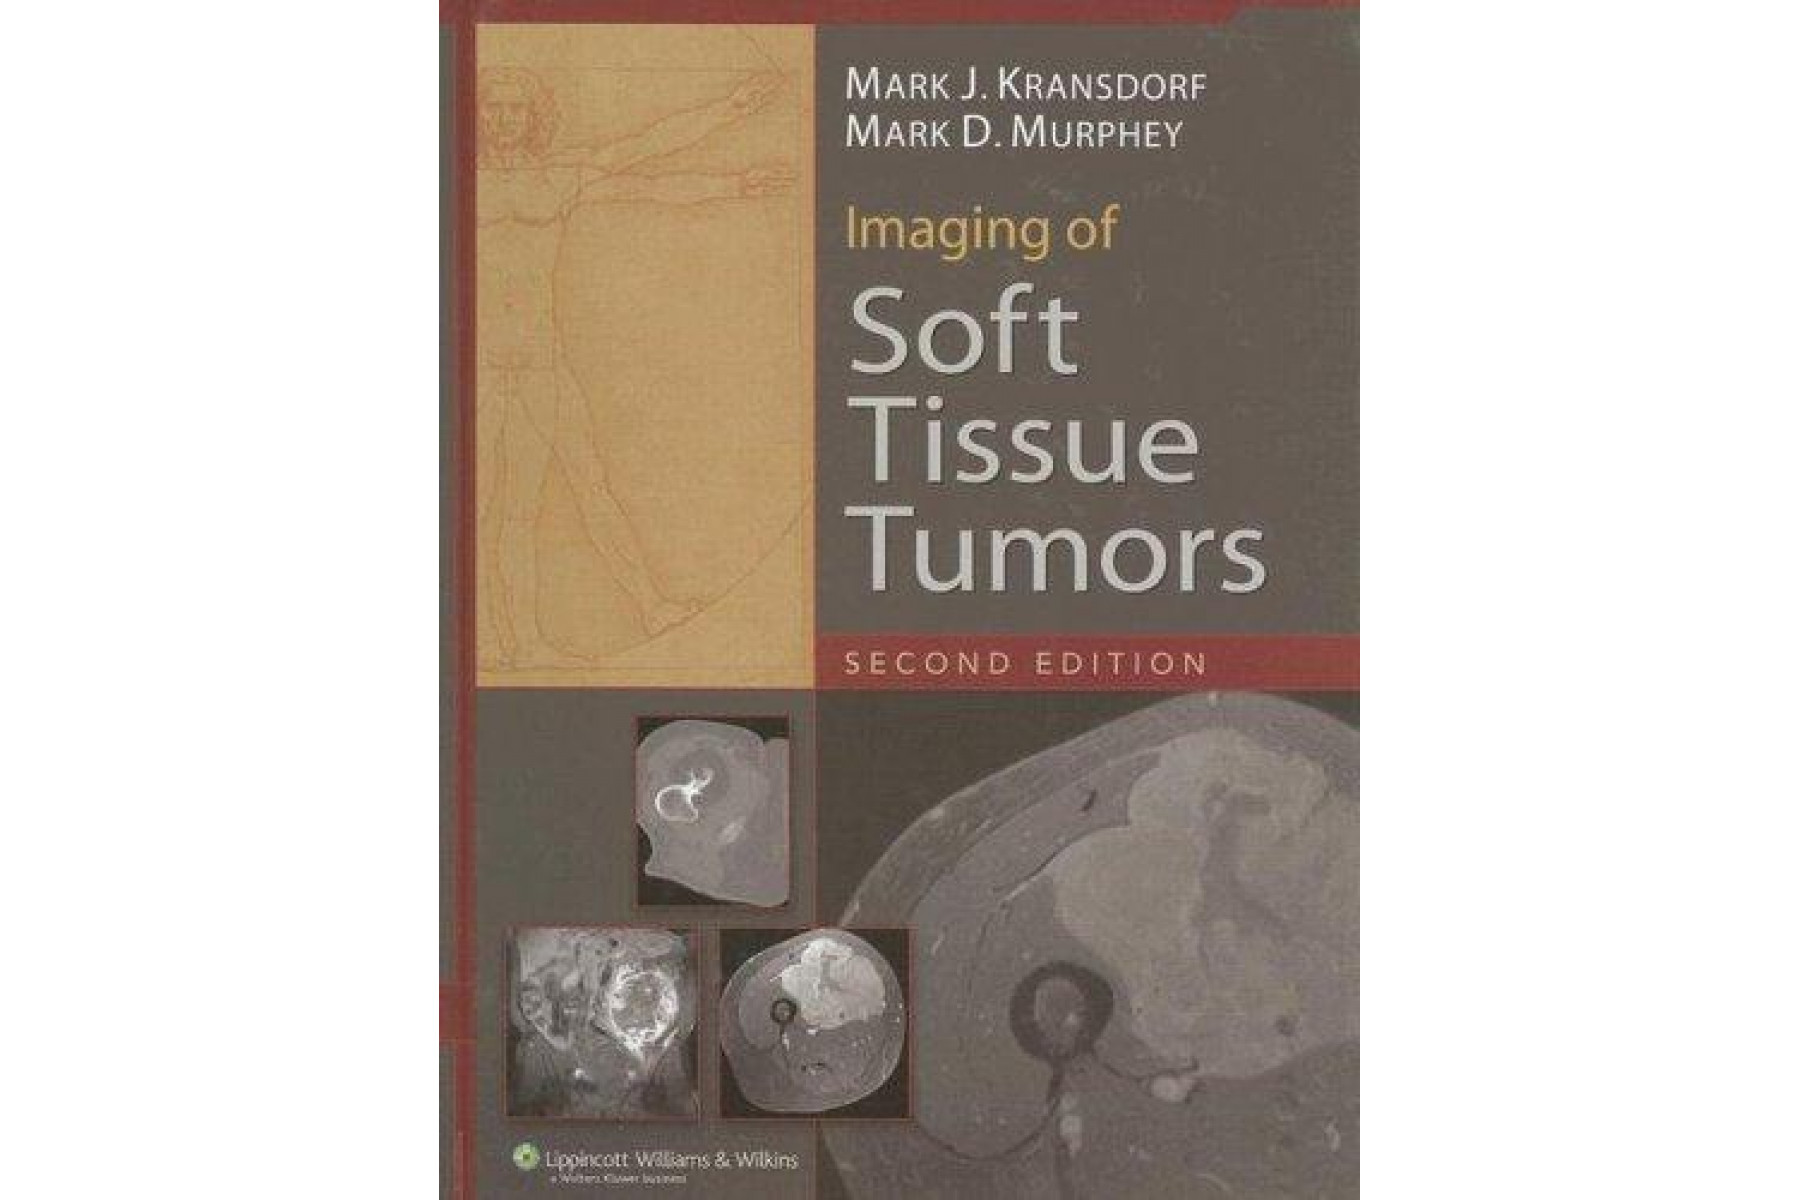 Imaging of Soft Tissue Tumors